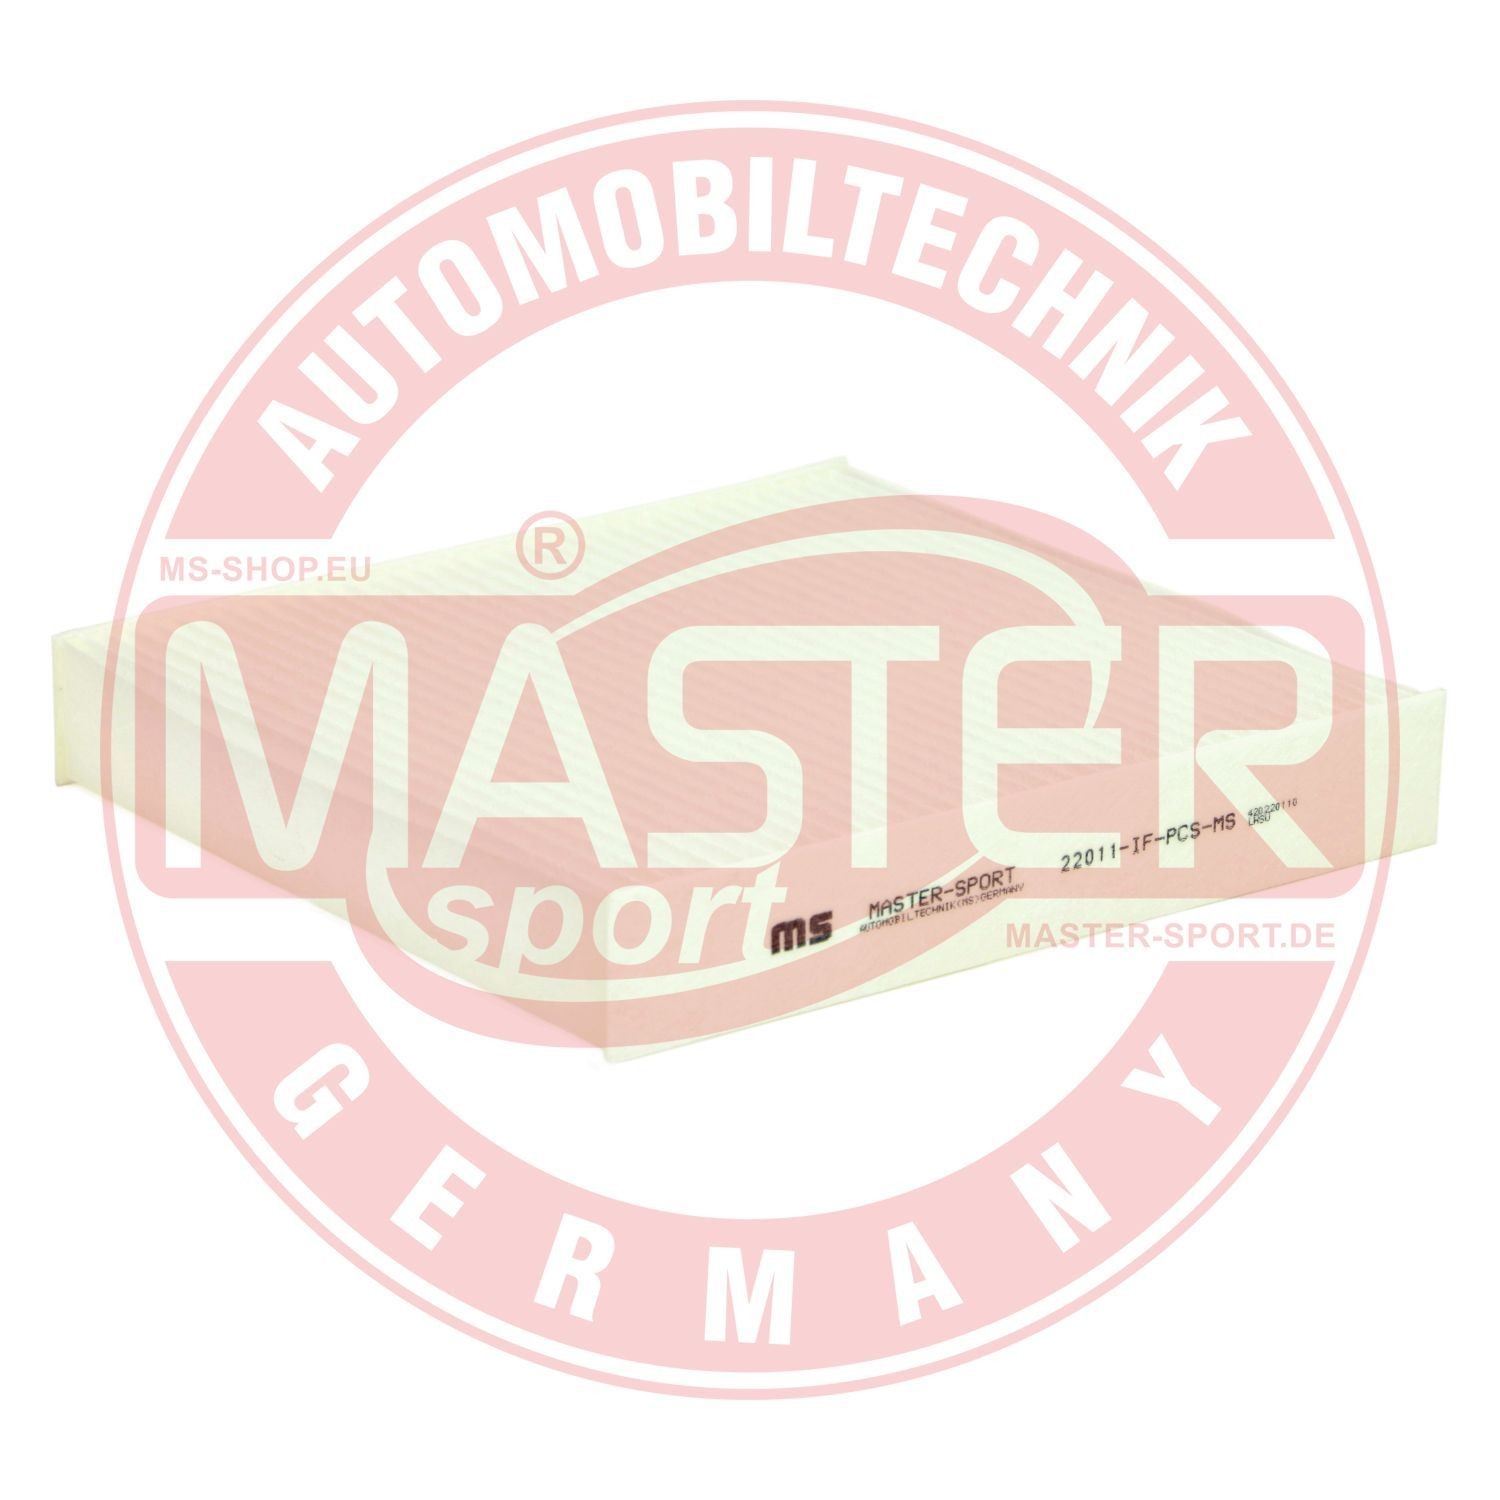 MASTER-SPORT Filtr wentylacja przestrzeni pasażerskiej Nissan 22011-IF-PCS-MS w oryginalnej jakości